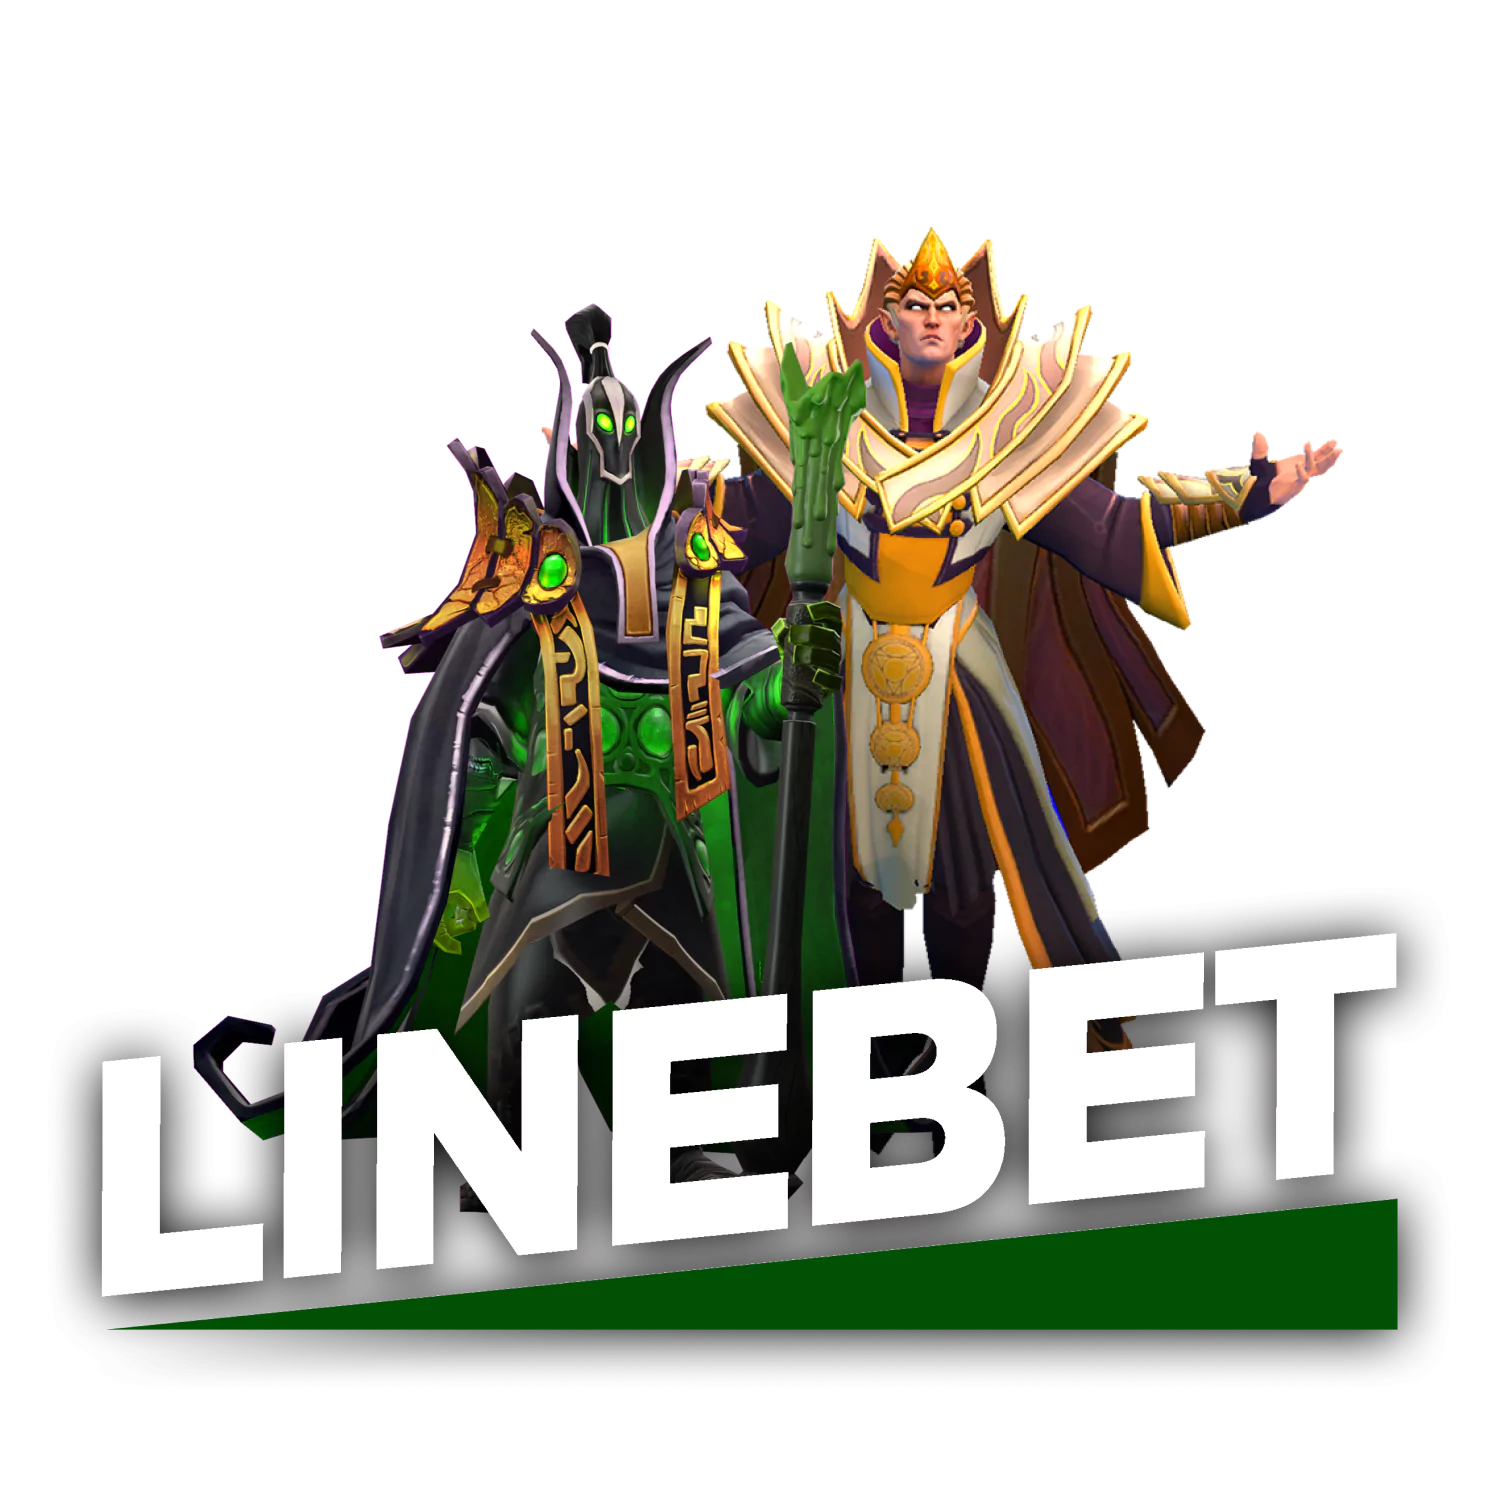 On Linebet you can bet on Dota2.